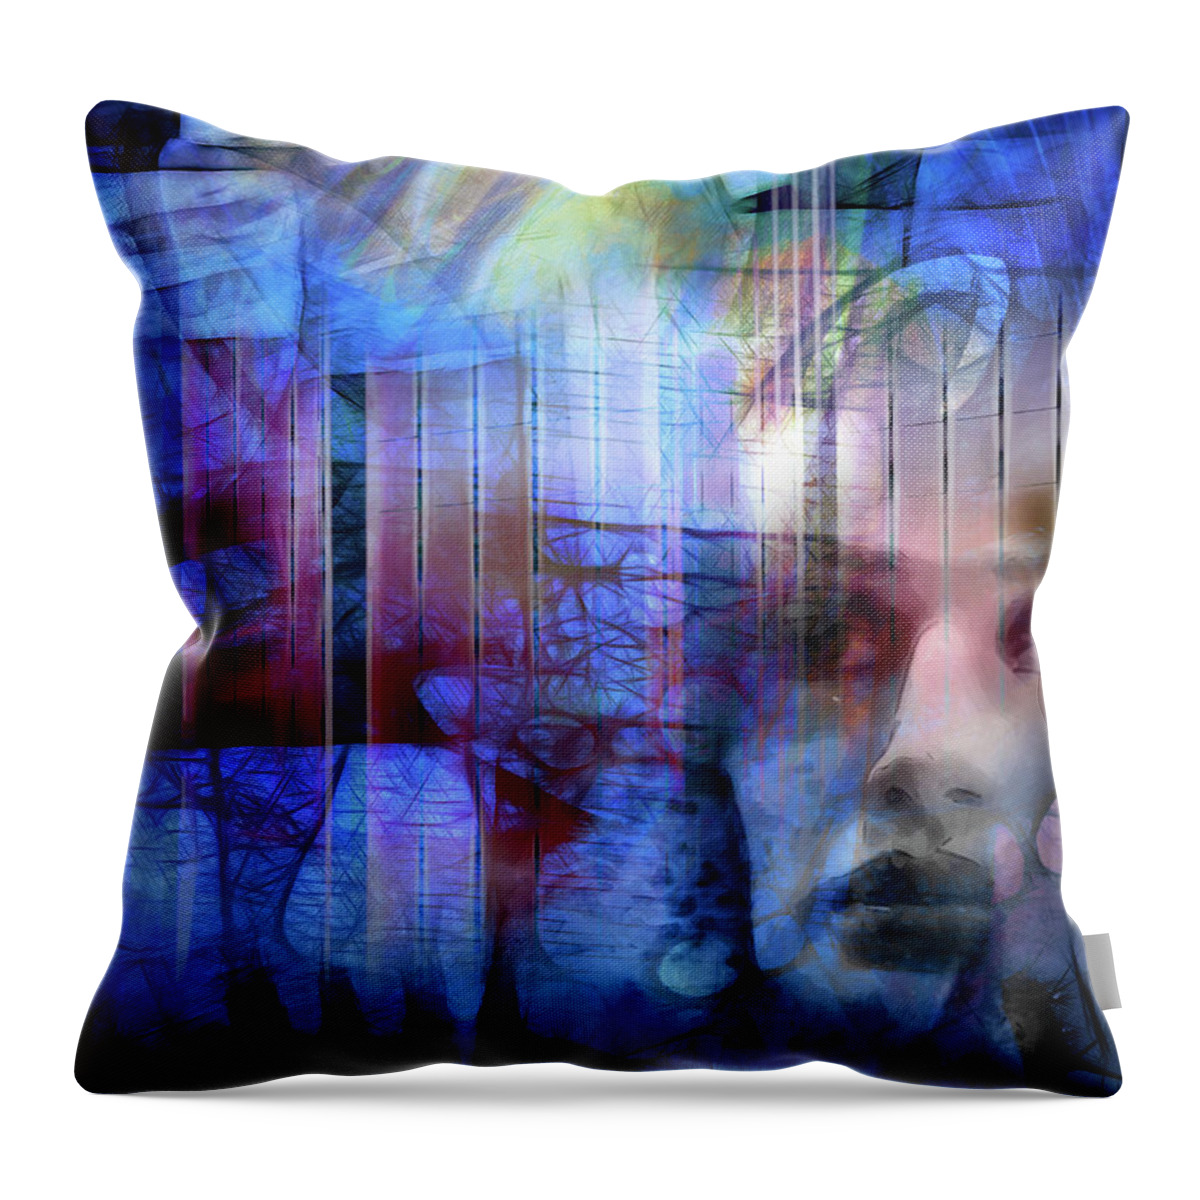 Blue Drama Throw Pillow featuring the digital art Blue Drama Vision by Lutz Baar